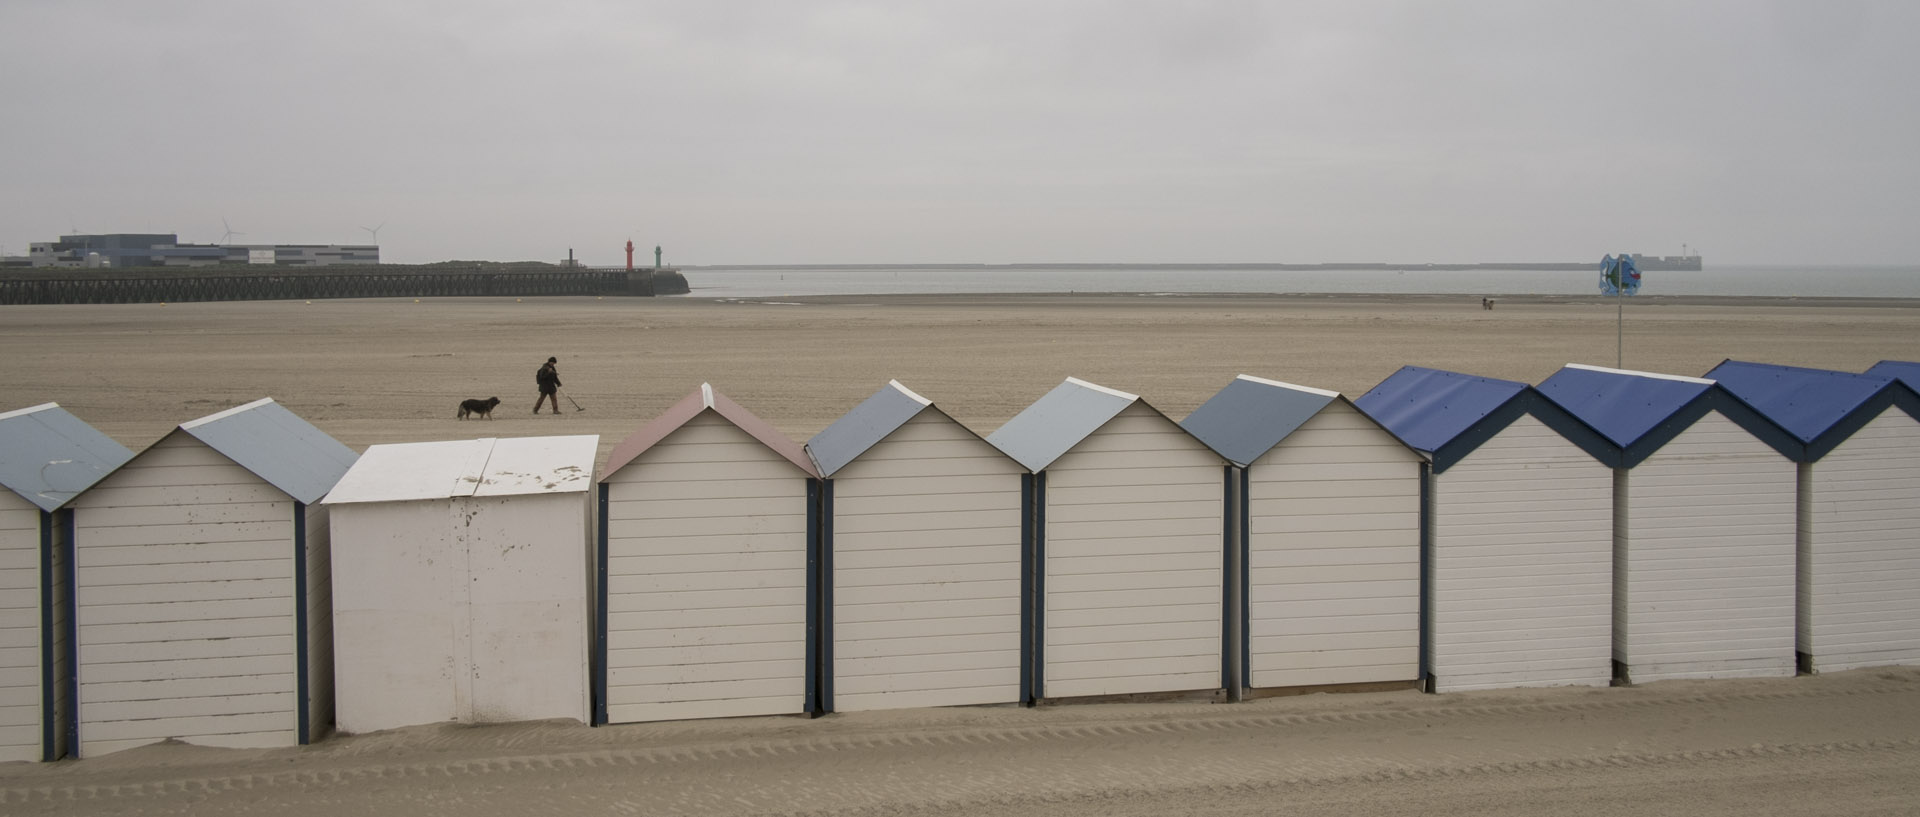 Mardi 3 juin 2014, 11:23, plage, Boulogne sur mer